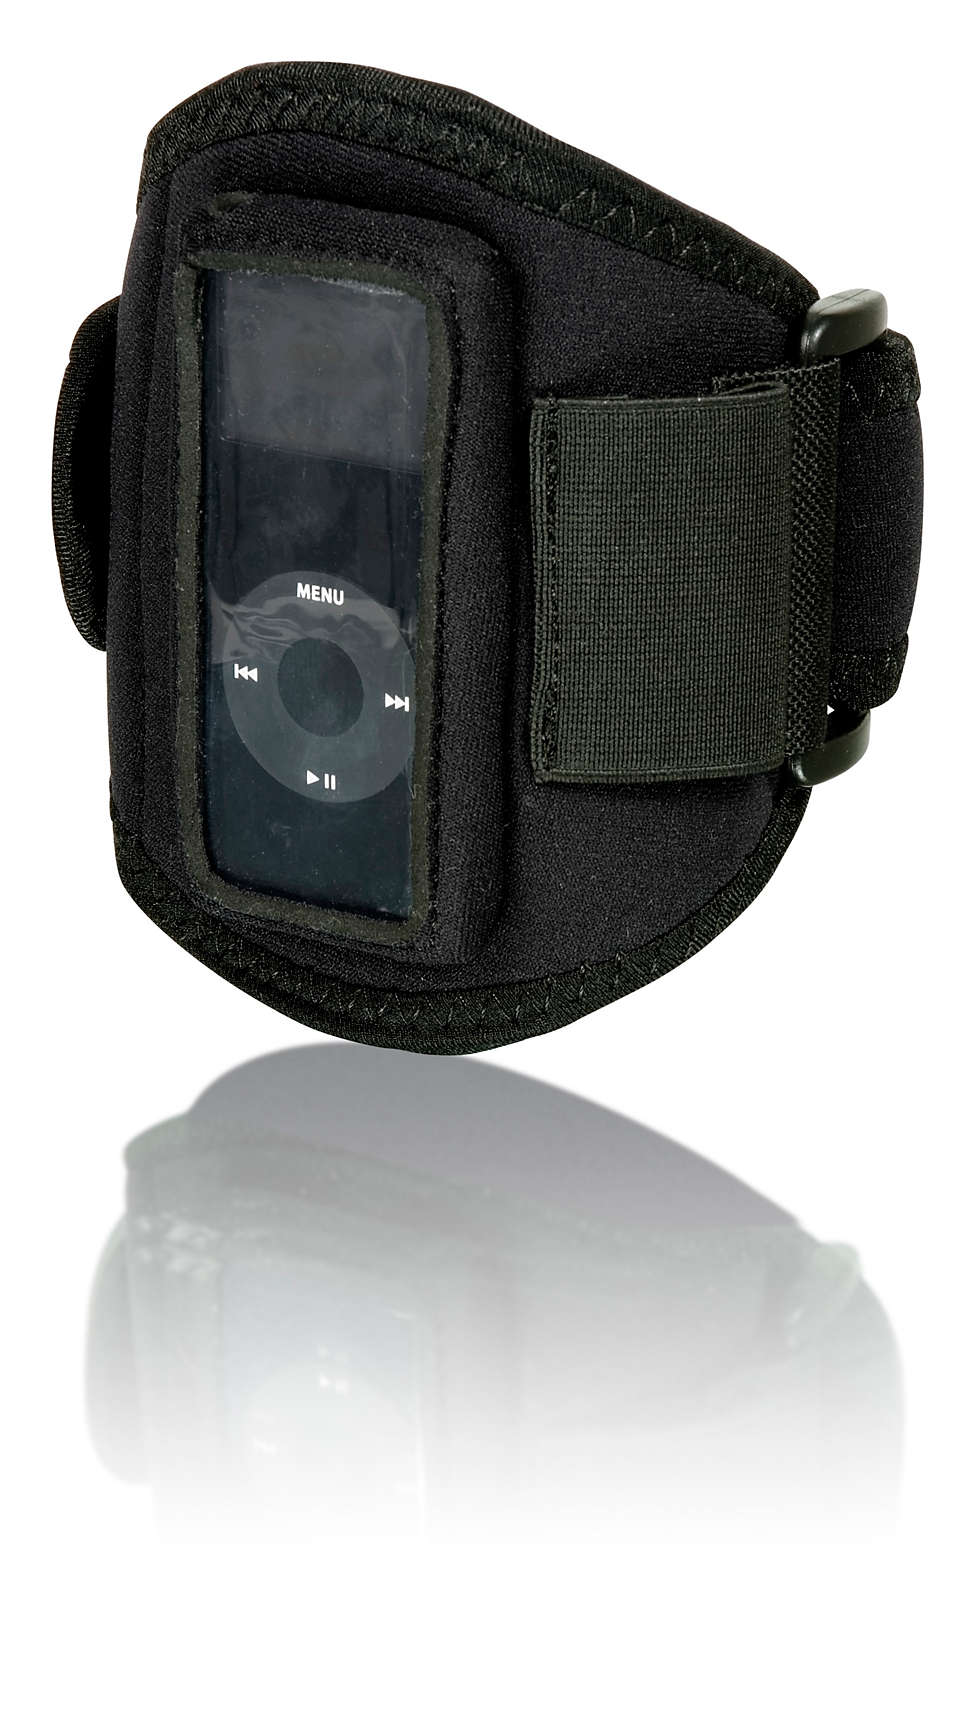 Trenuj ze swoim odtwarzaczem iPod Nano